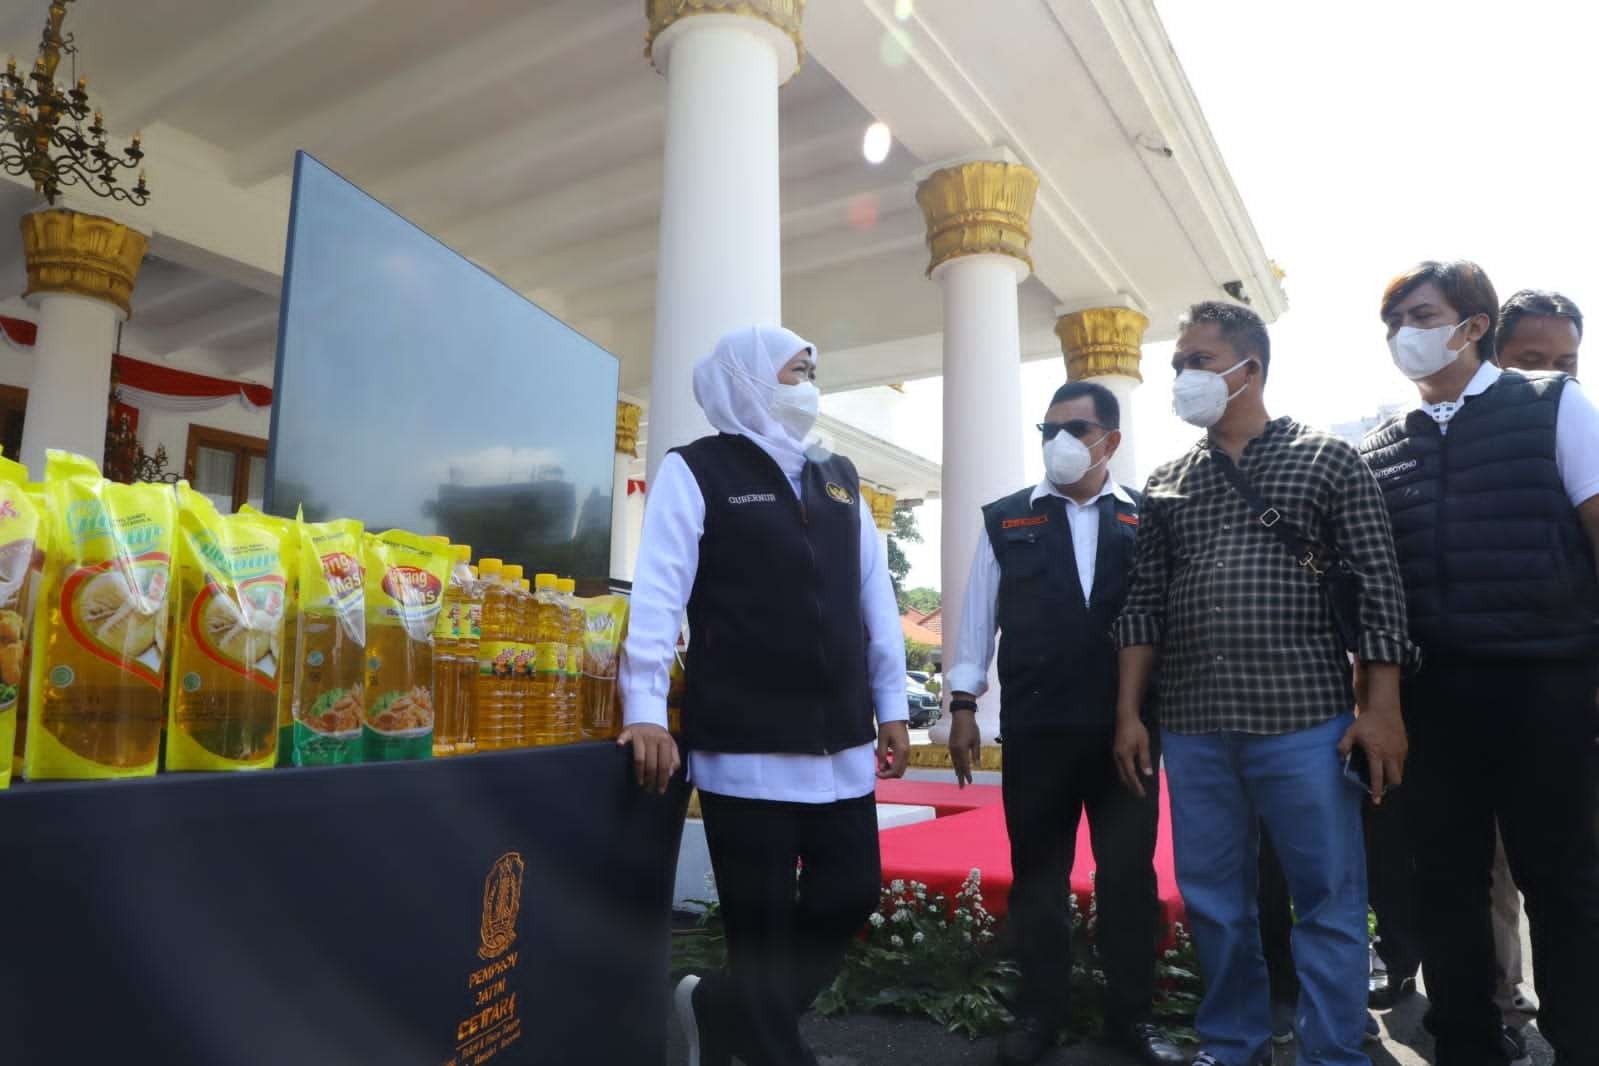 Gubernur Jatim, Khofifah Indar Parawansa (kiri) saat melepas distribusi minyak goreng di Gedung Negara Grahadi, Surabaya. (Foto: Istimewa)